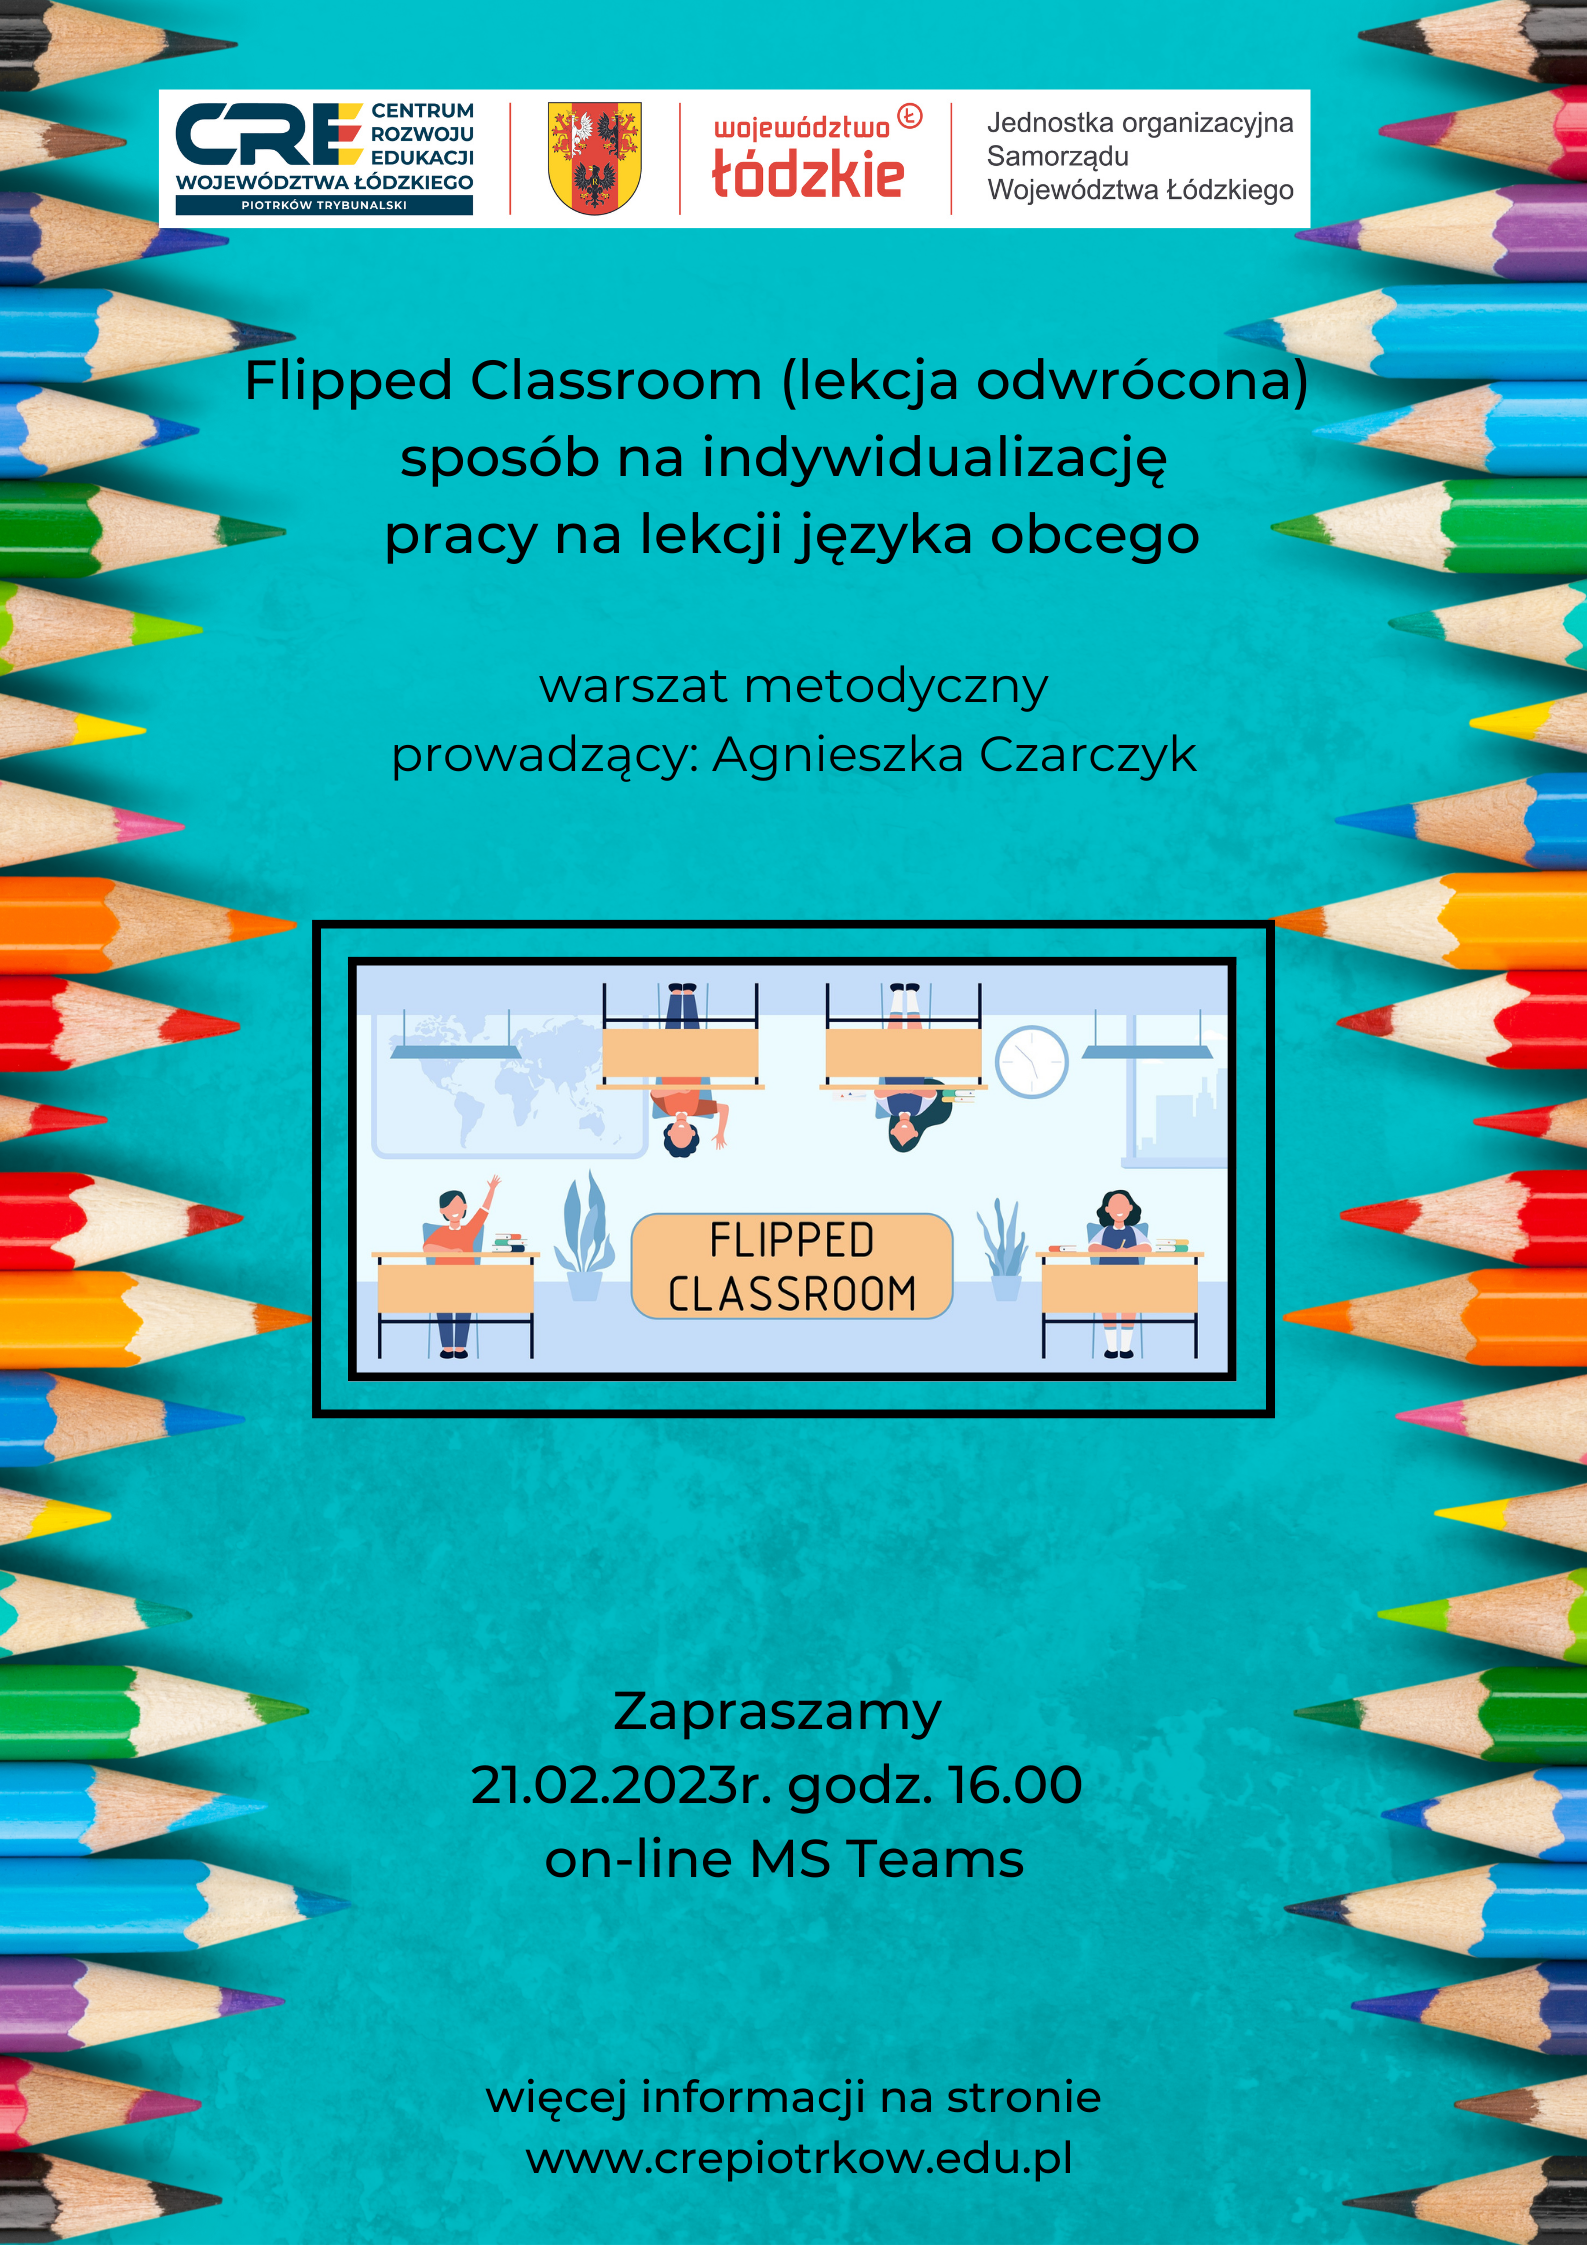 Flipped Classroom (lekcja odwrócona) – sposób na indywidualizację pracy na lekcji języka obcego  21.02.2023 